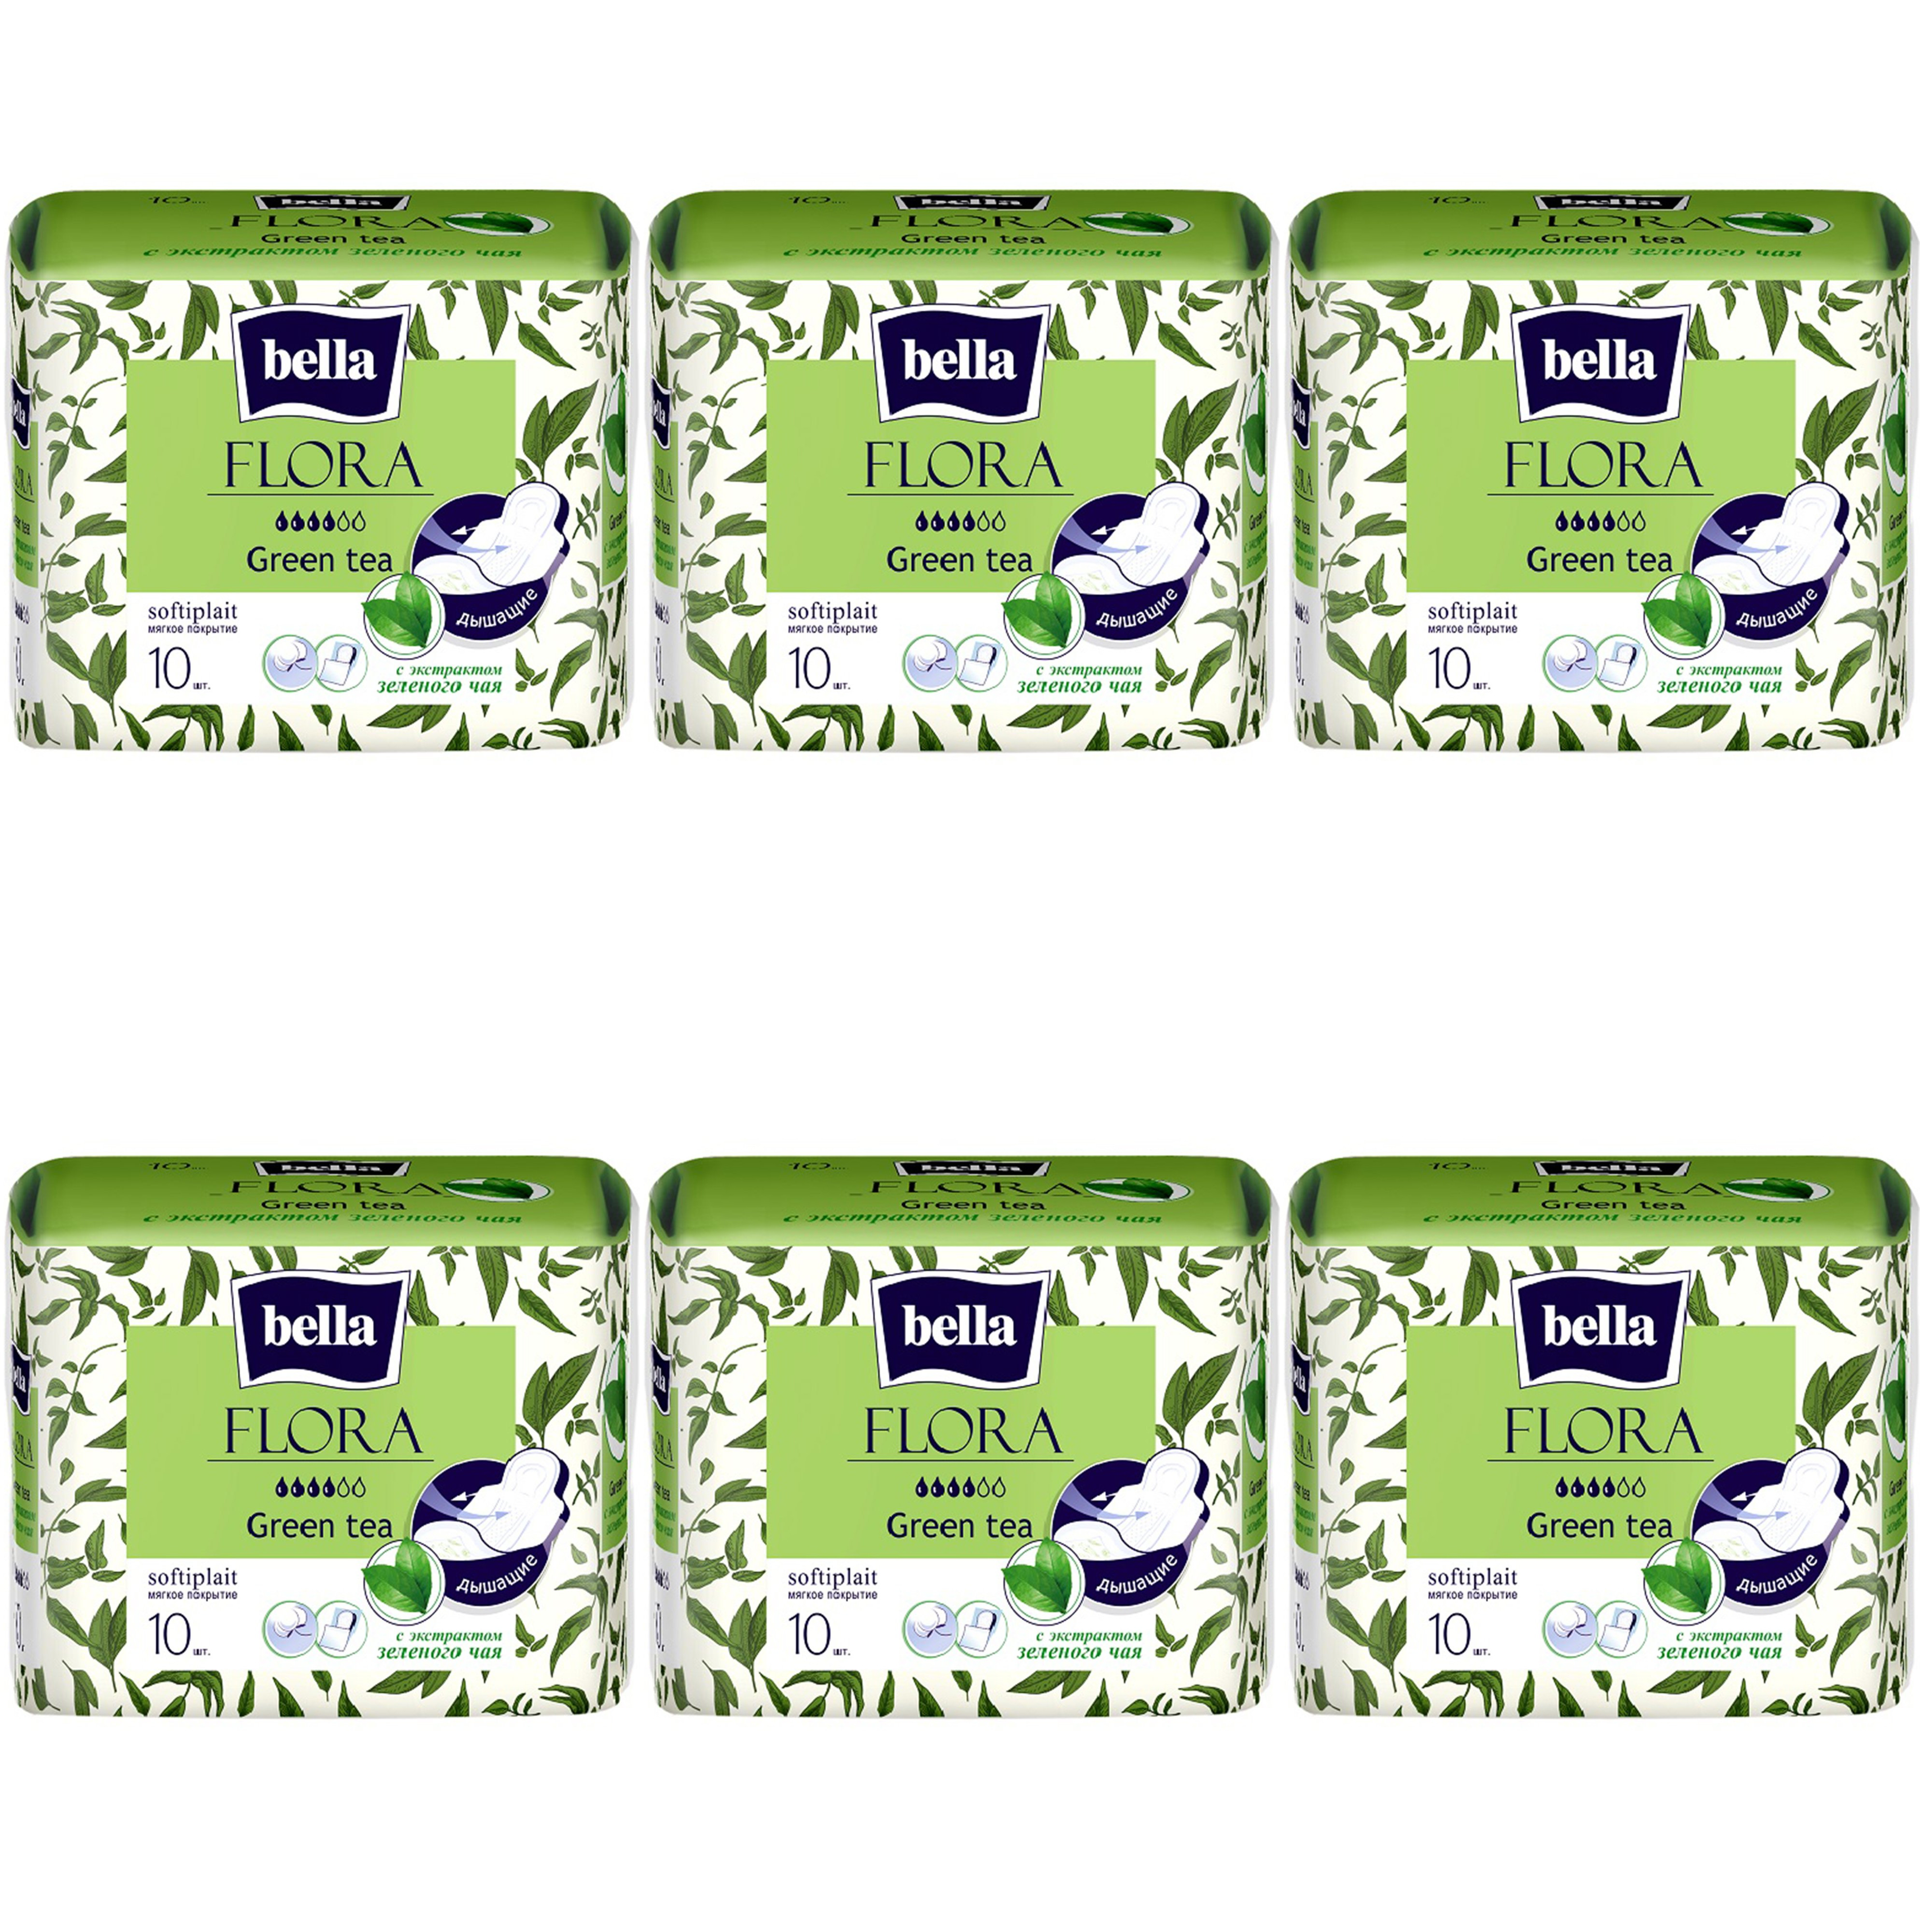 Прокладки Bella Flora Green tea, с экстрактом зеленого чая, 10шт. х 6уп. женские прокладки bella normal air softiplait 20шт